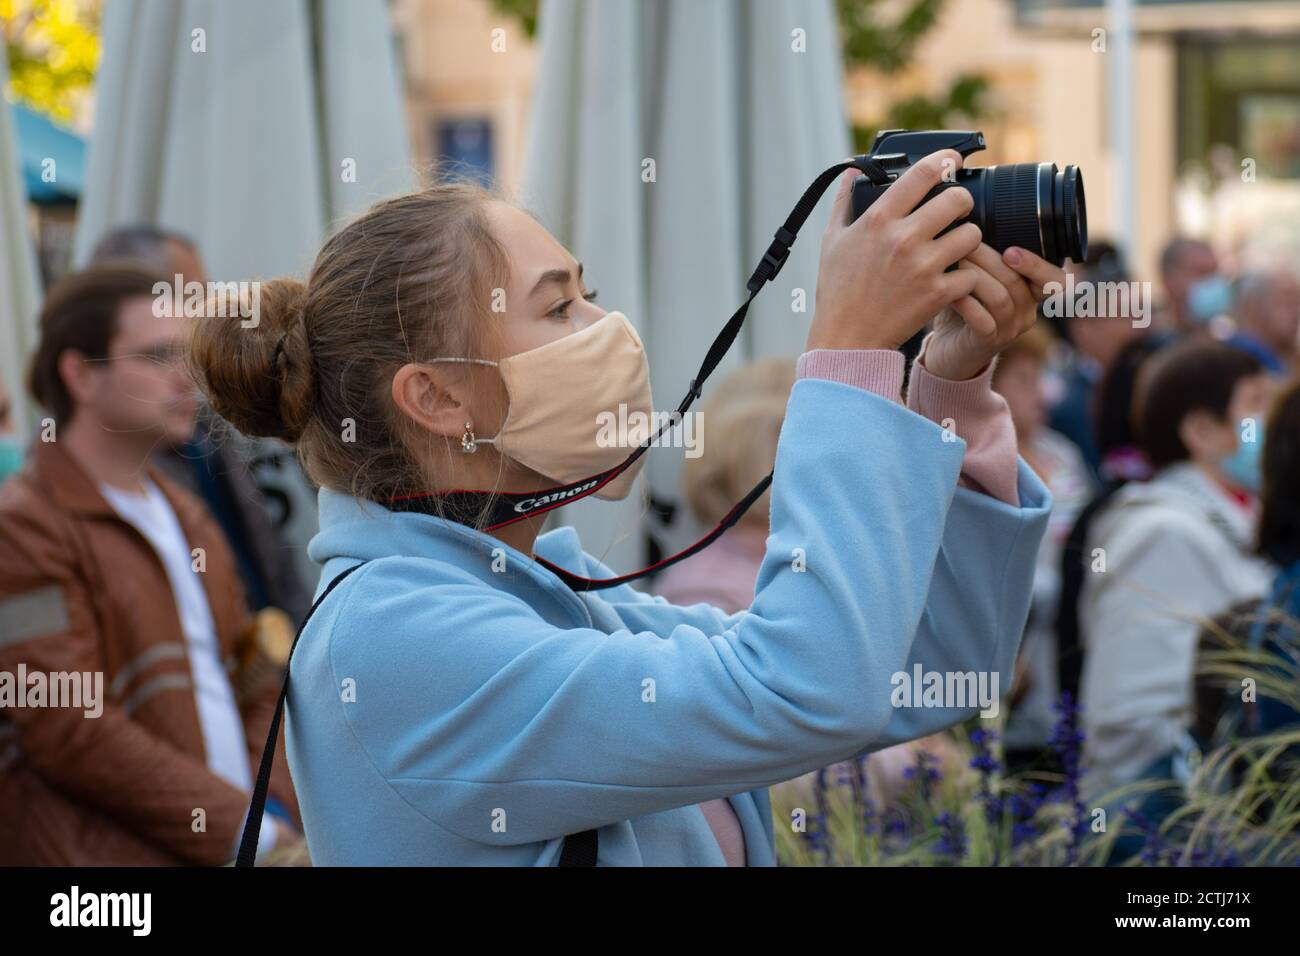 Belle fille avec masque prendre des photos avec l'appareil photo pendant l'épidémie de Covid ou de coronavirus dans un événement public, festival de musique, concert Banque D'Images